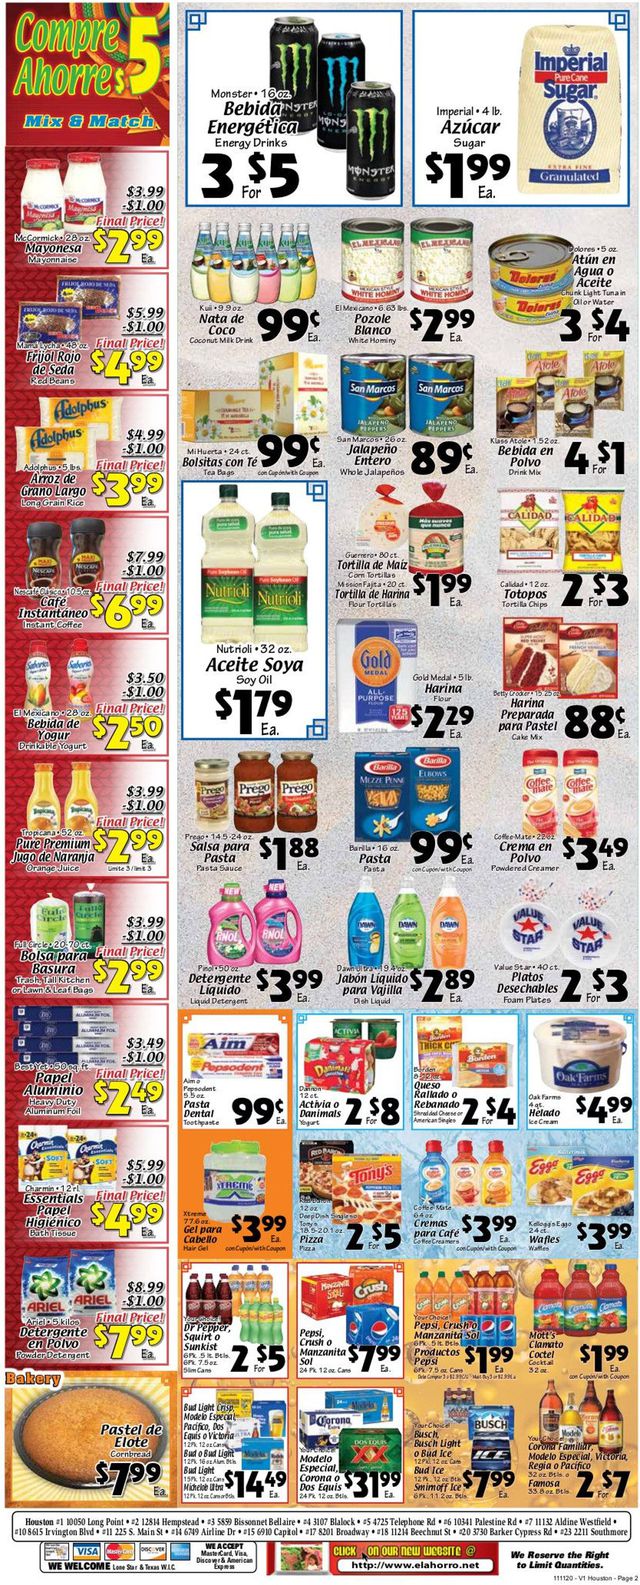 El Ahorro Supermarket Ad from 11/11/2020